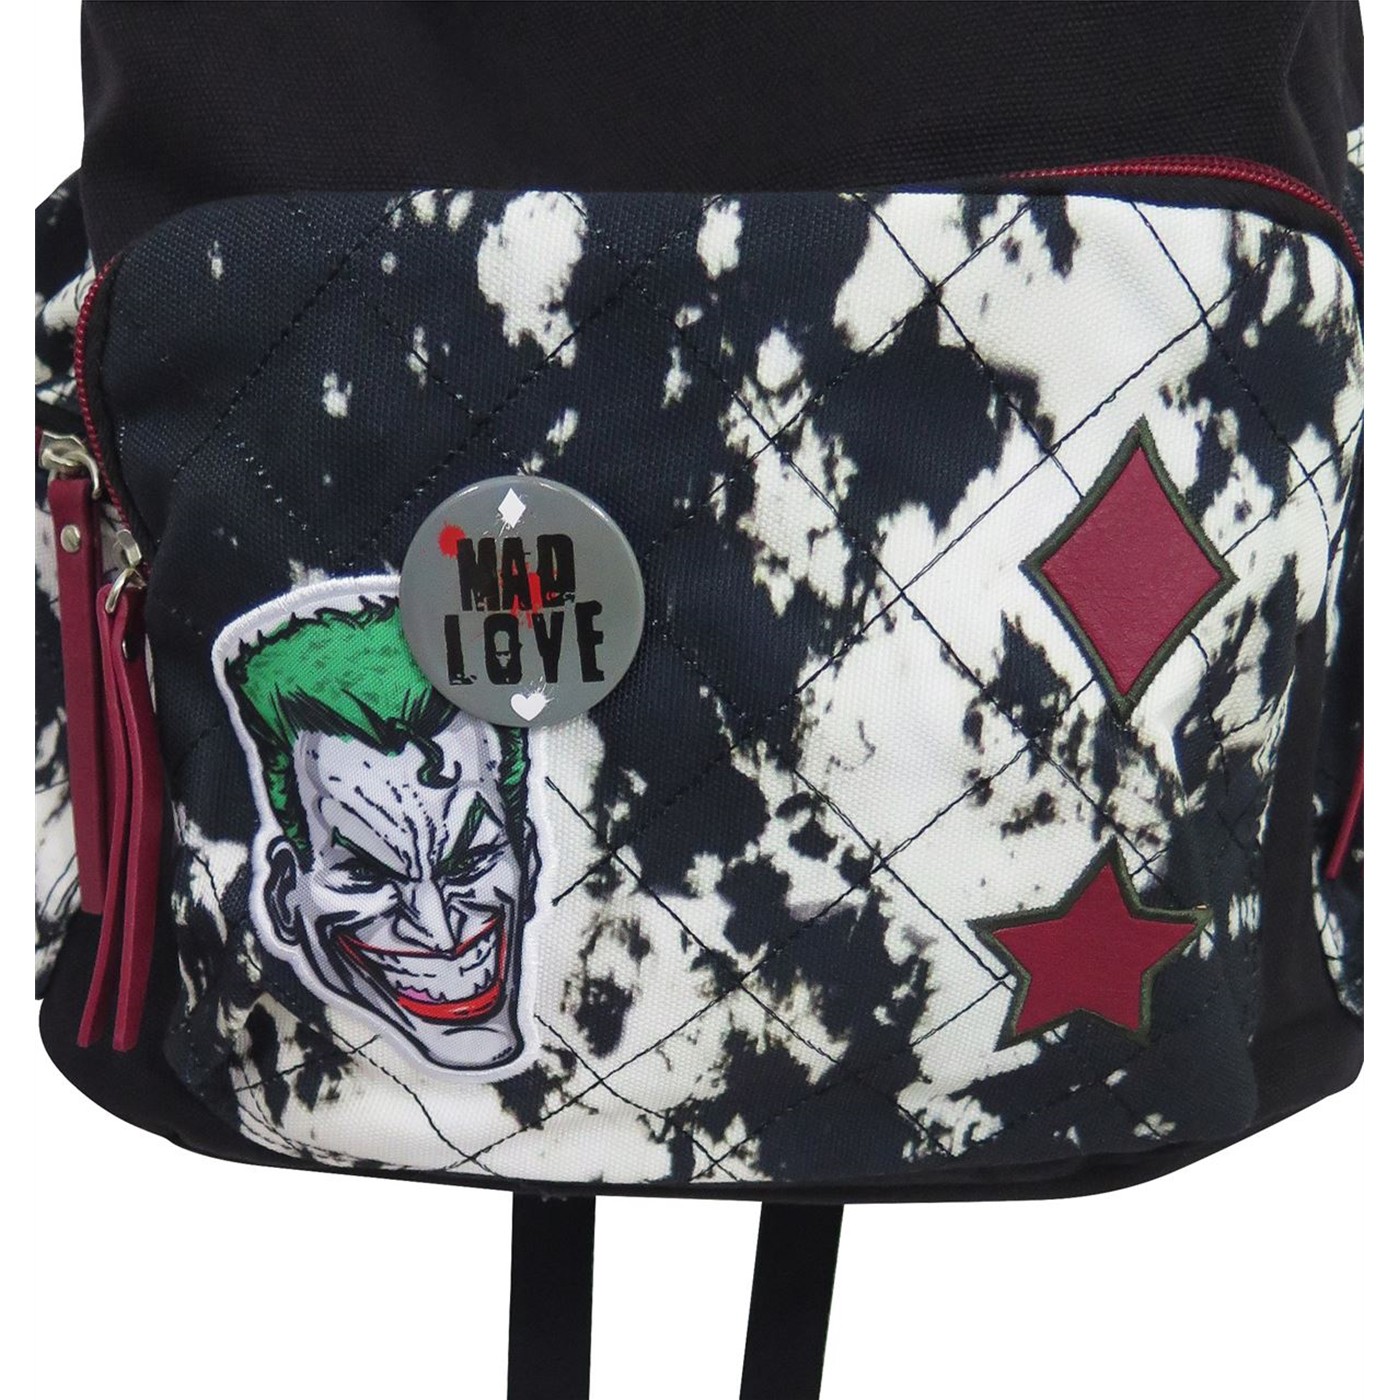 Harley Quinn Better Built Laptop Backpack